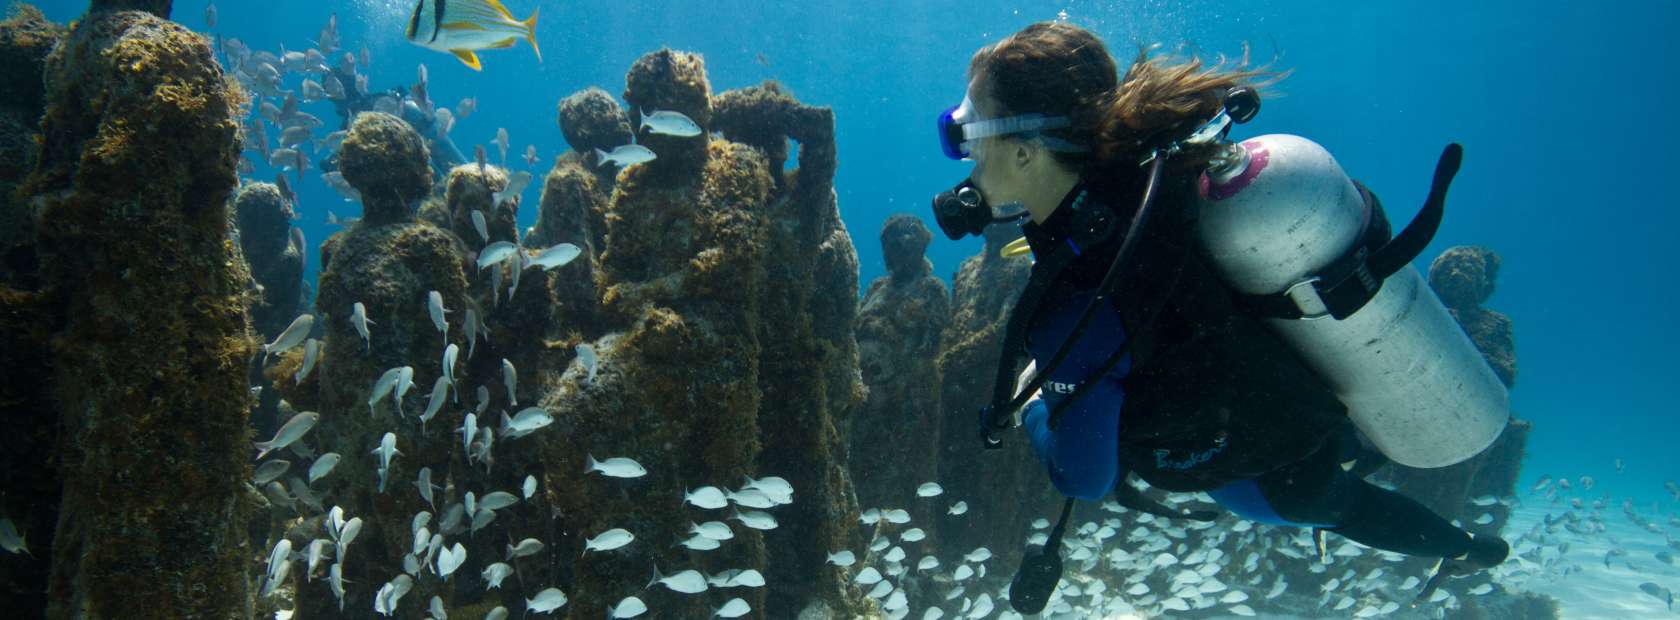 Scuba Diver near Underwater Statues